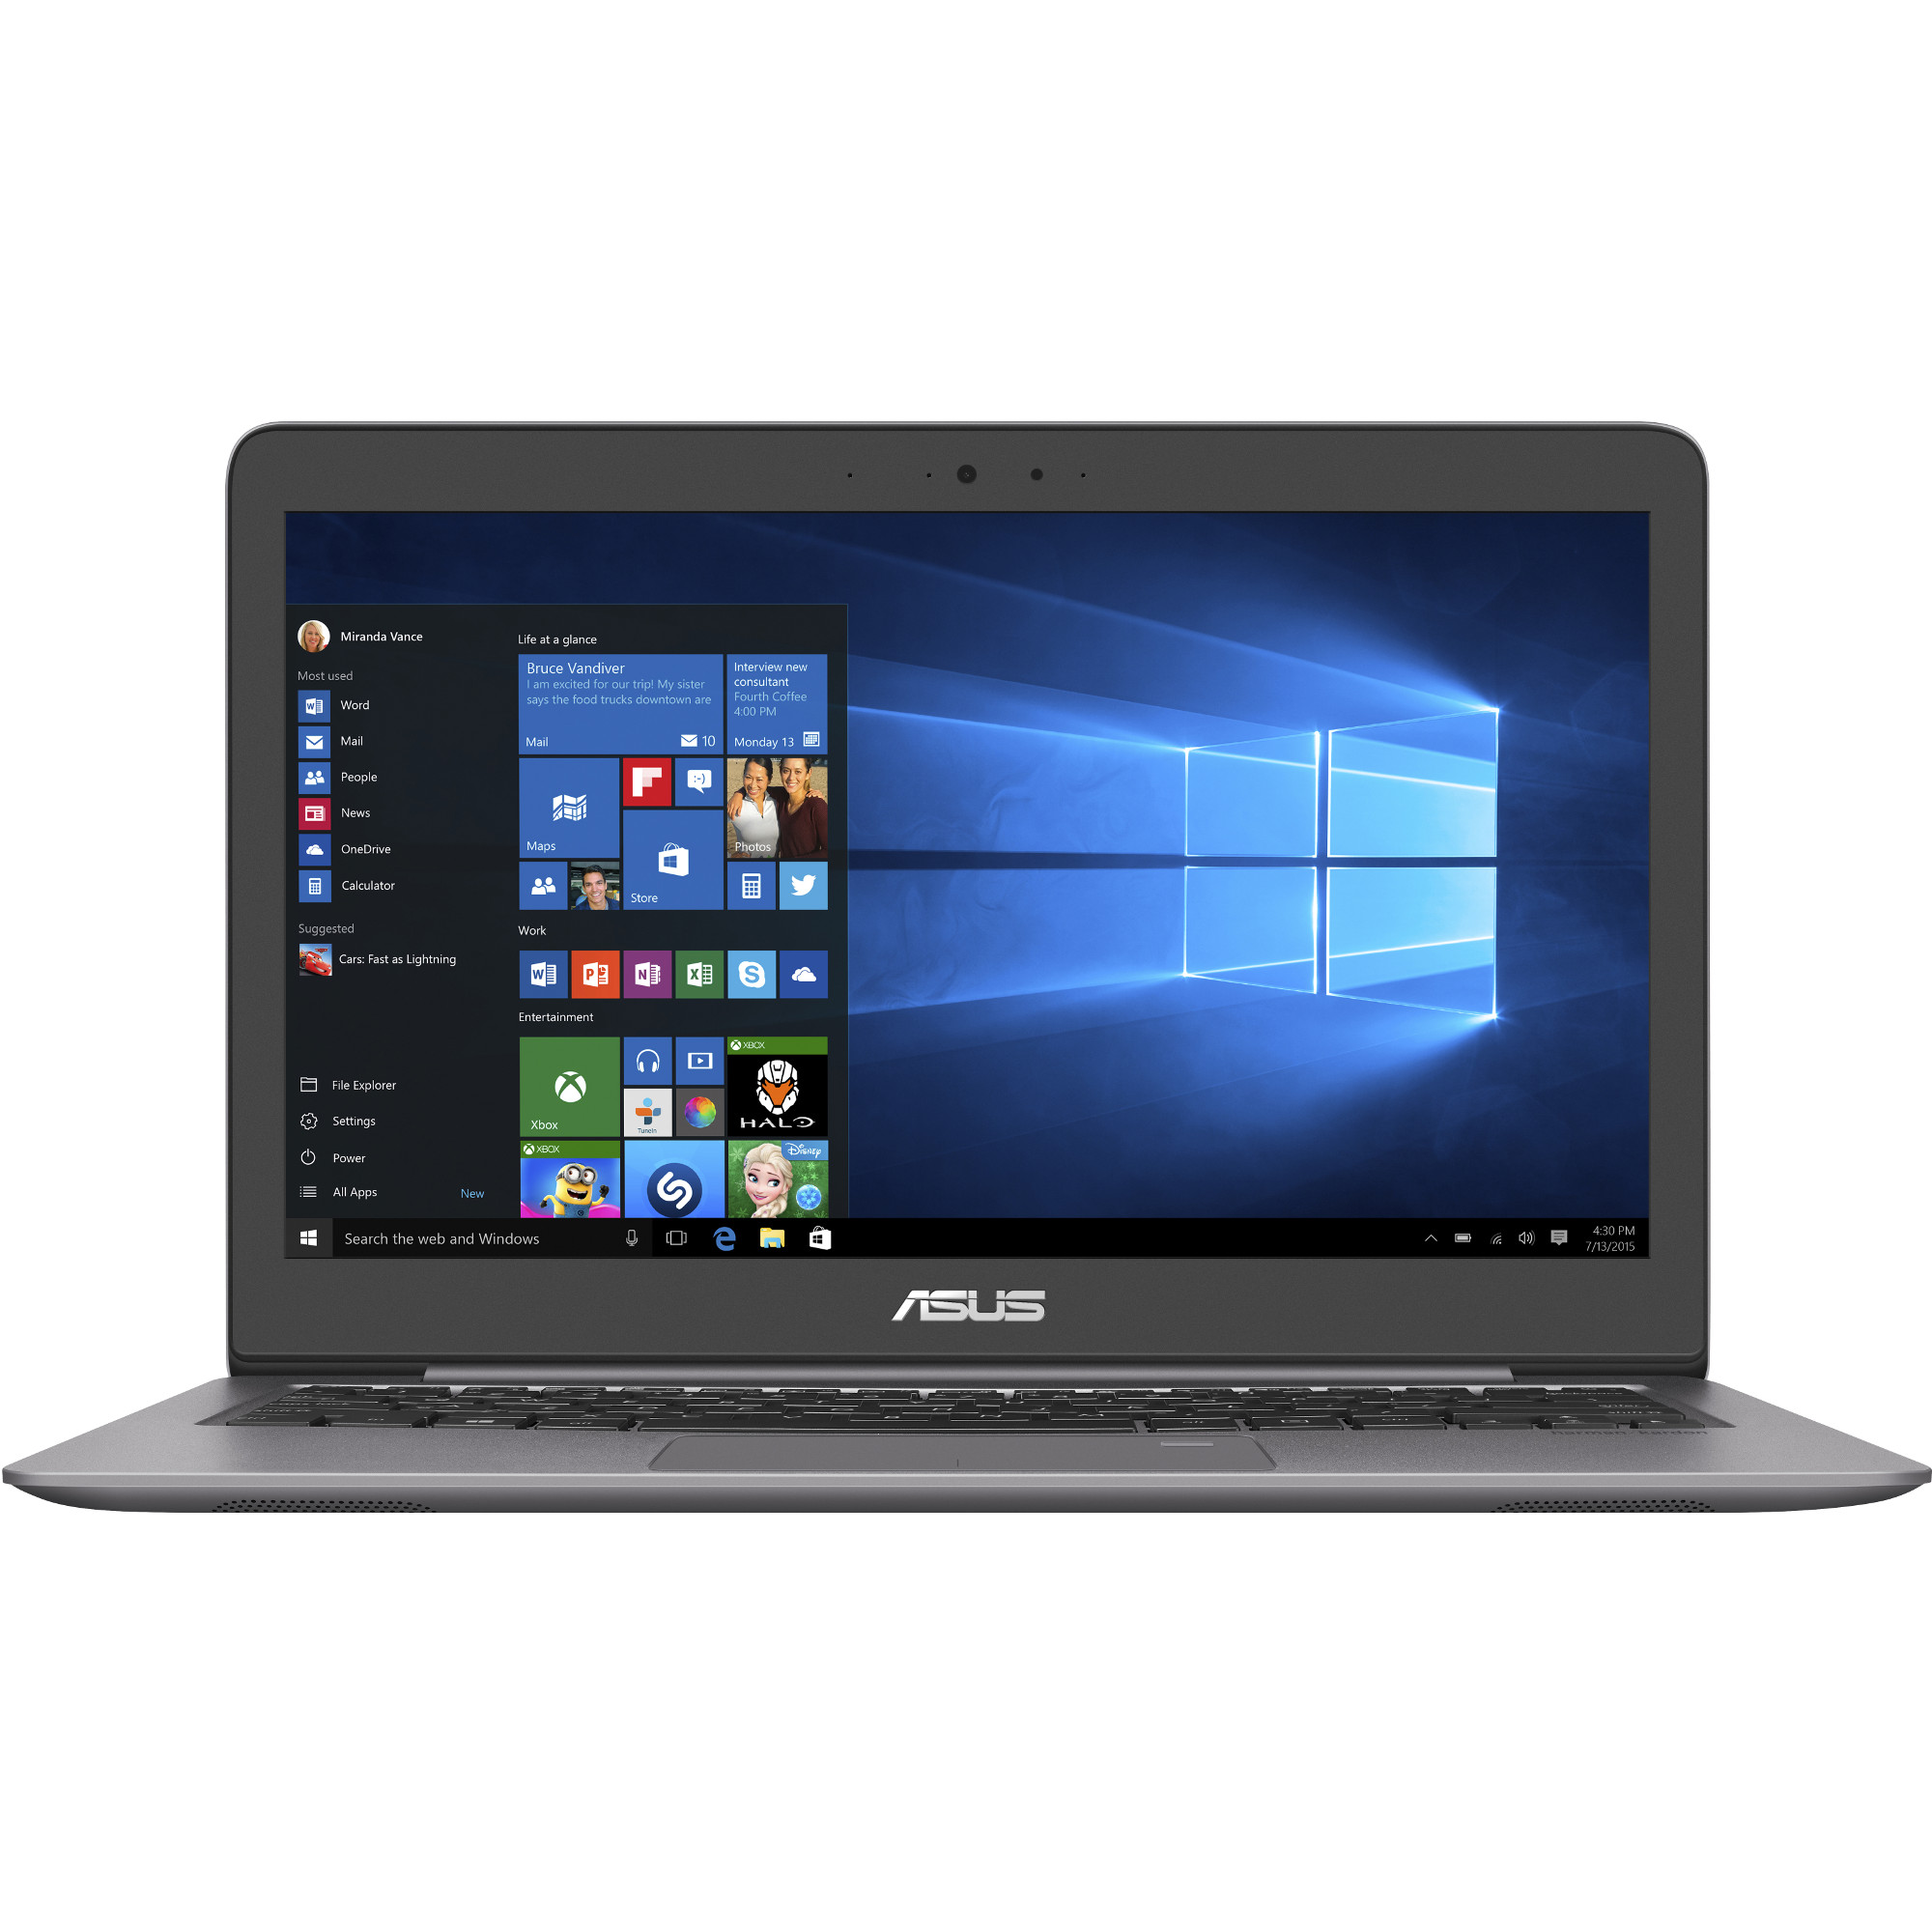 Laptop ASUS UX310UA, Intel Core i7-7500U, 8GB DDR4, HDD 1TB + SSD 128GB, Intel HD Graphics, Windows 10